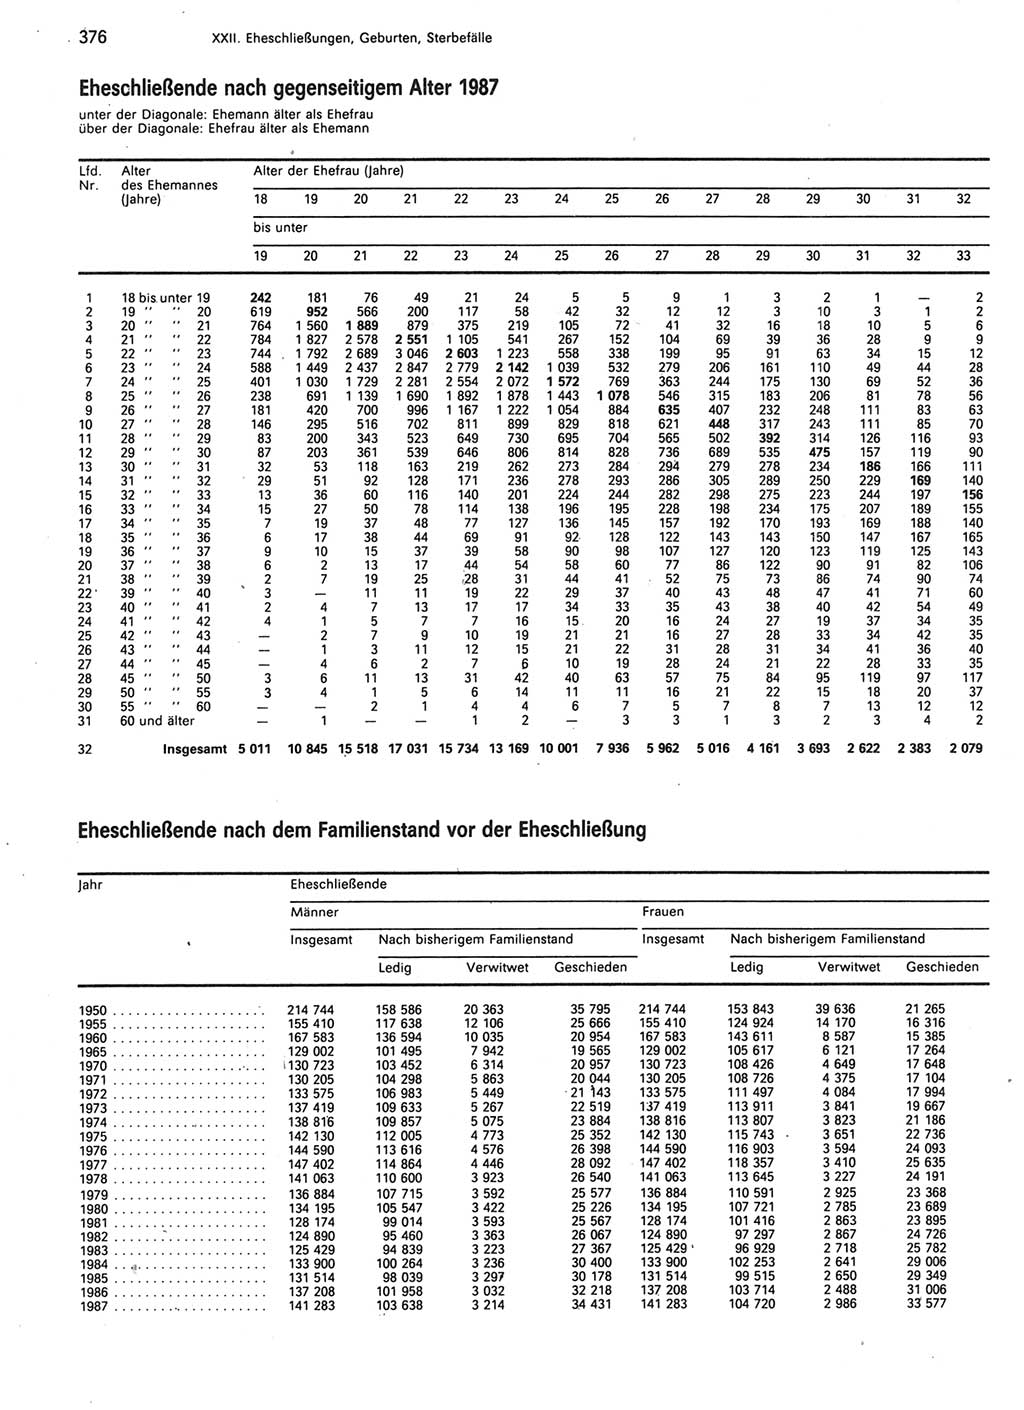 Statistisches Jahrbuch der Deutschen Demokratischen Republik (DDR) 1989, Seite 376 (Stat. Jb. DDR 1989, S. 376)